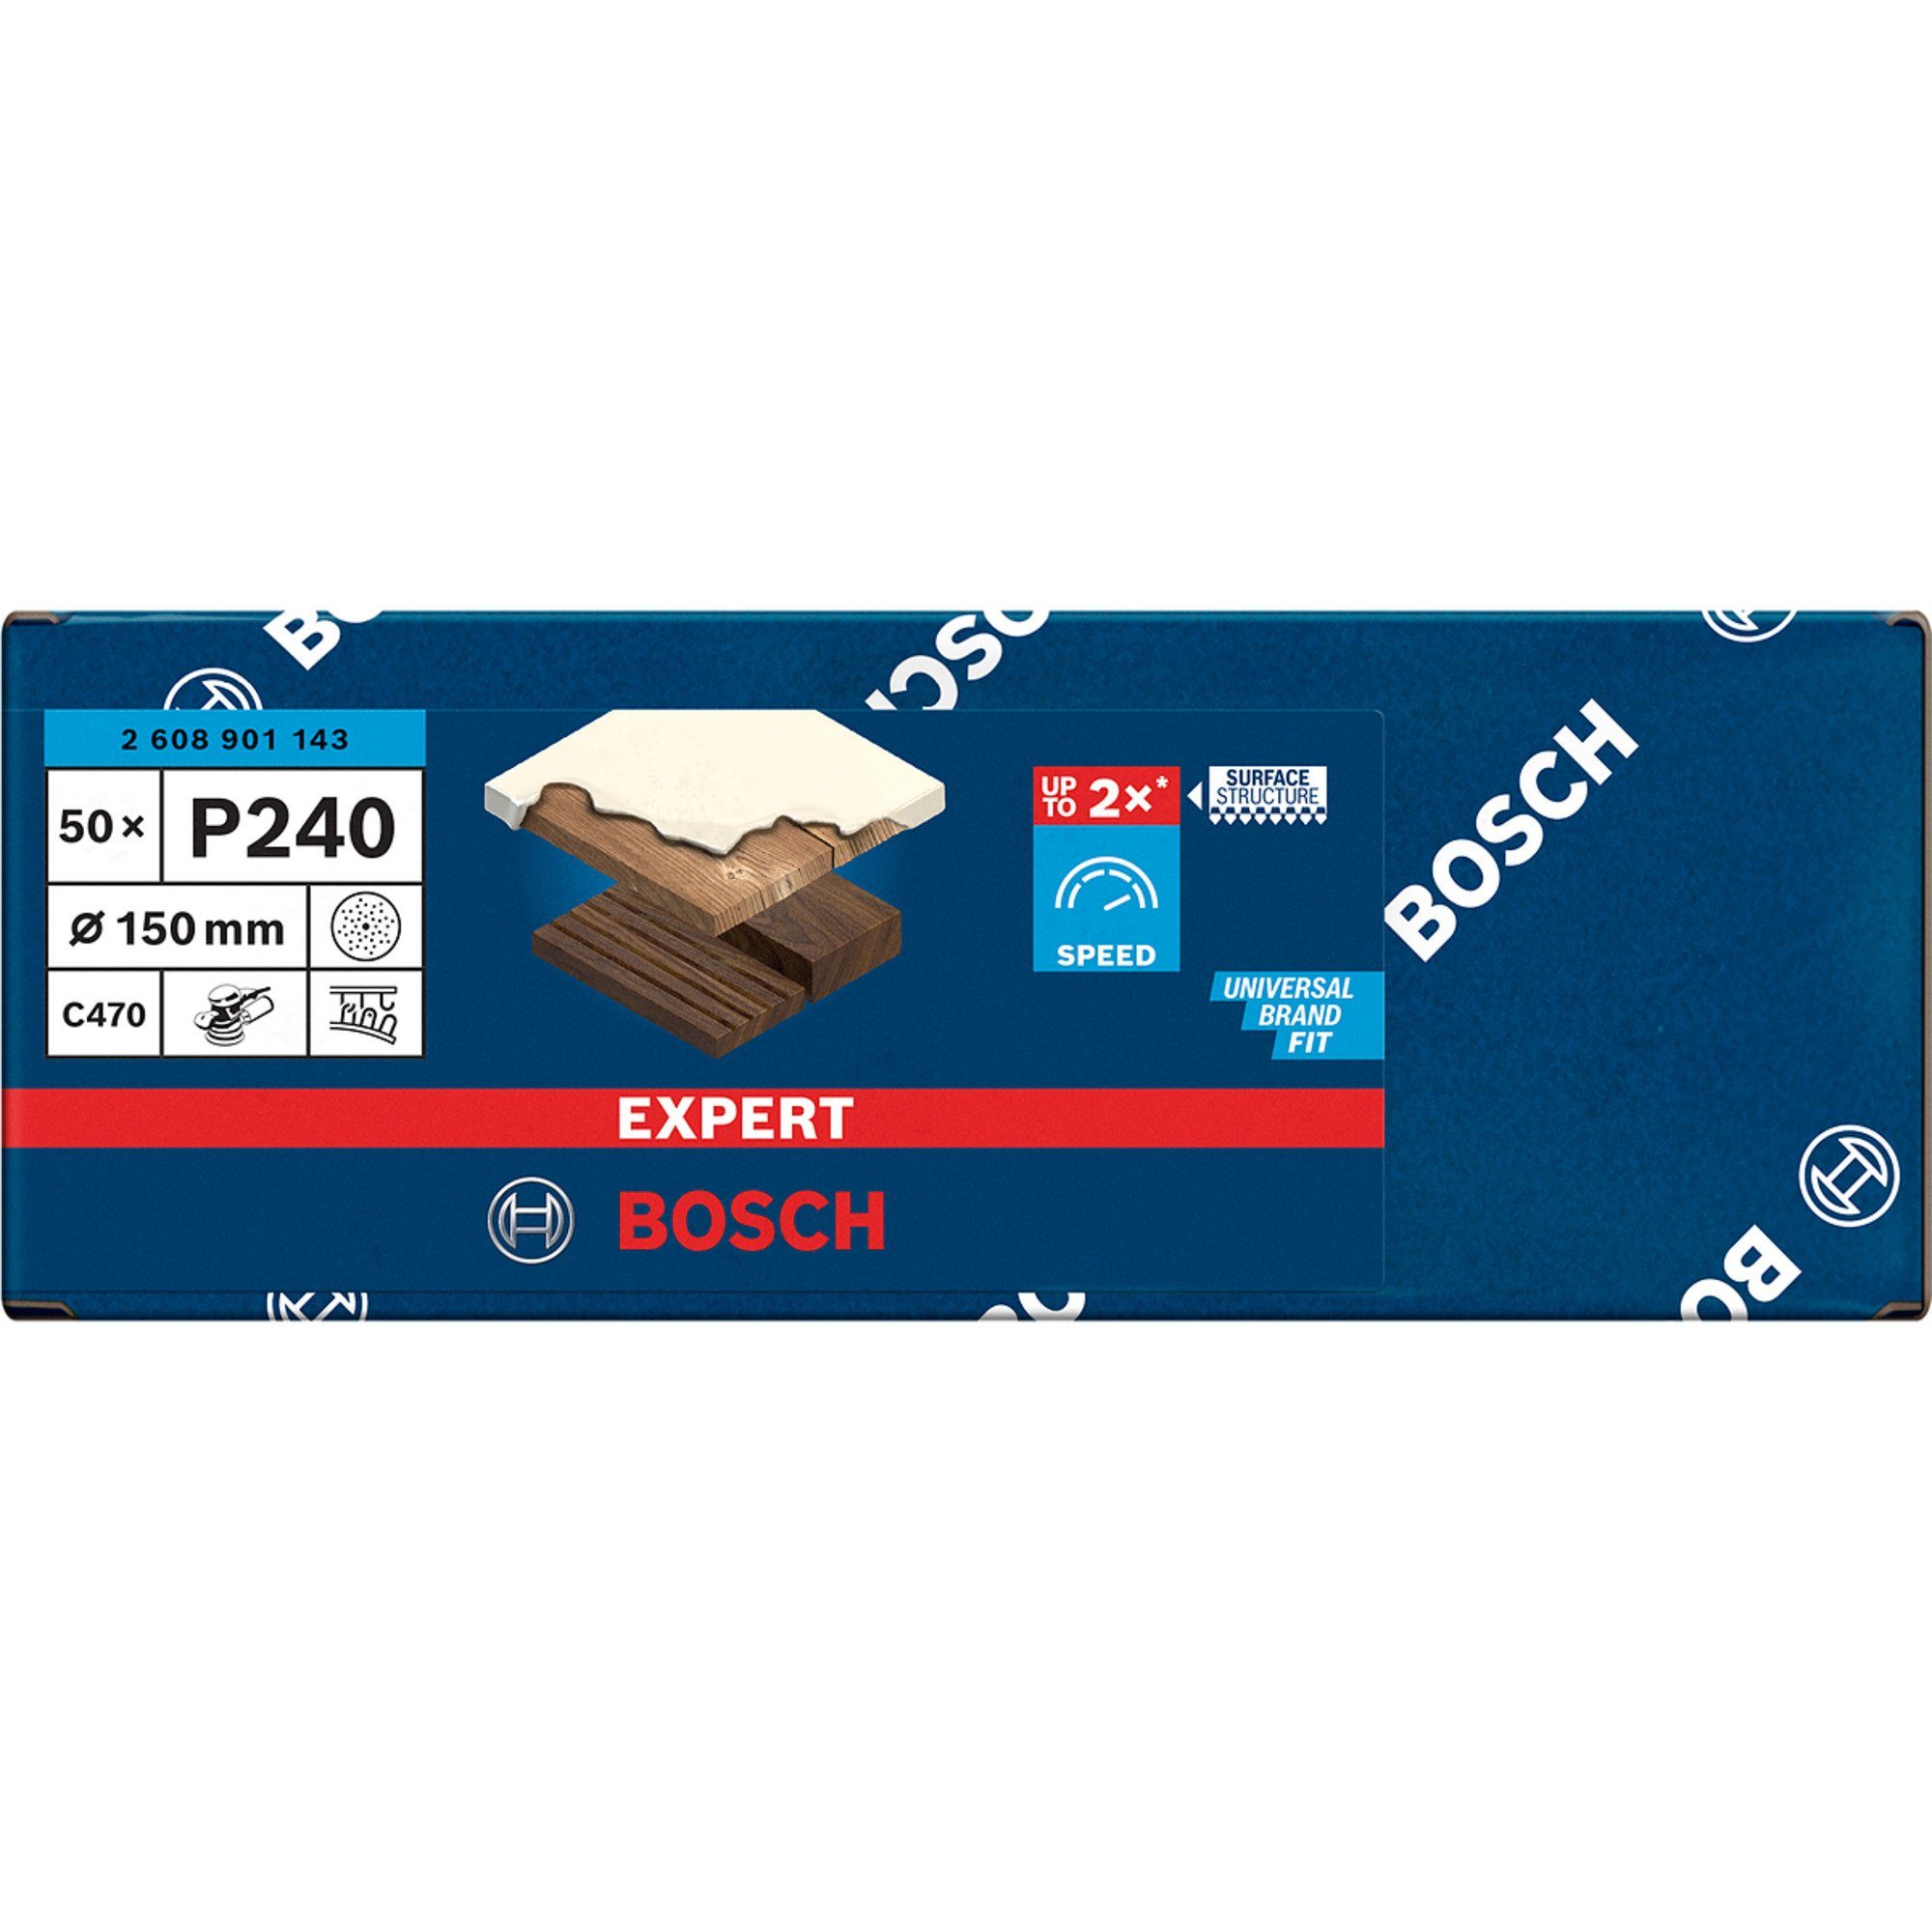 BOSCH Schleifscheibe Bosch Professional Expert Schleifblatt, C470 Ø